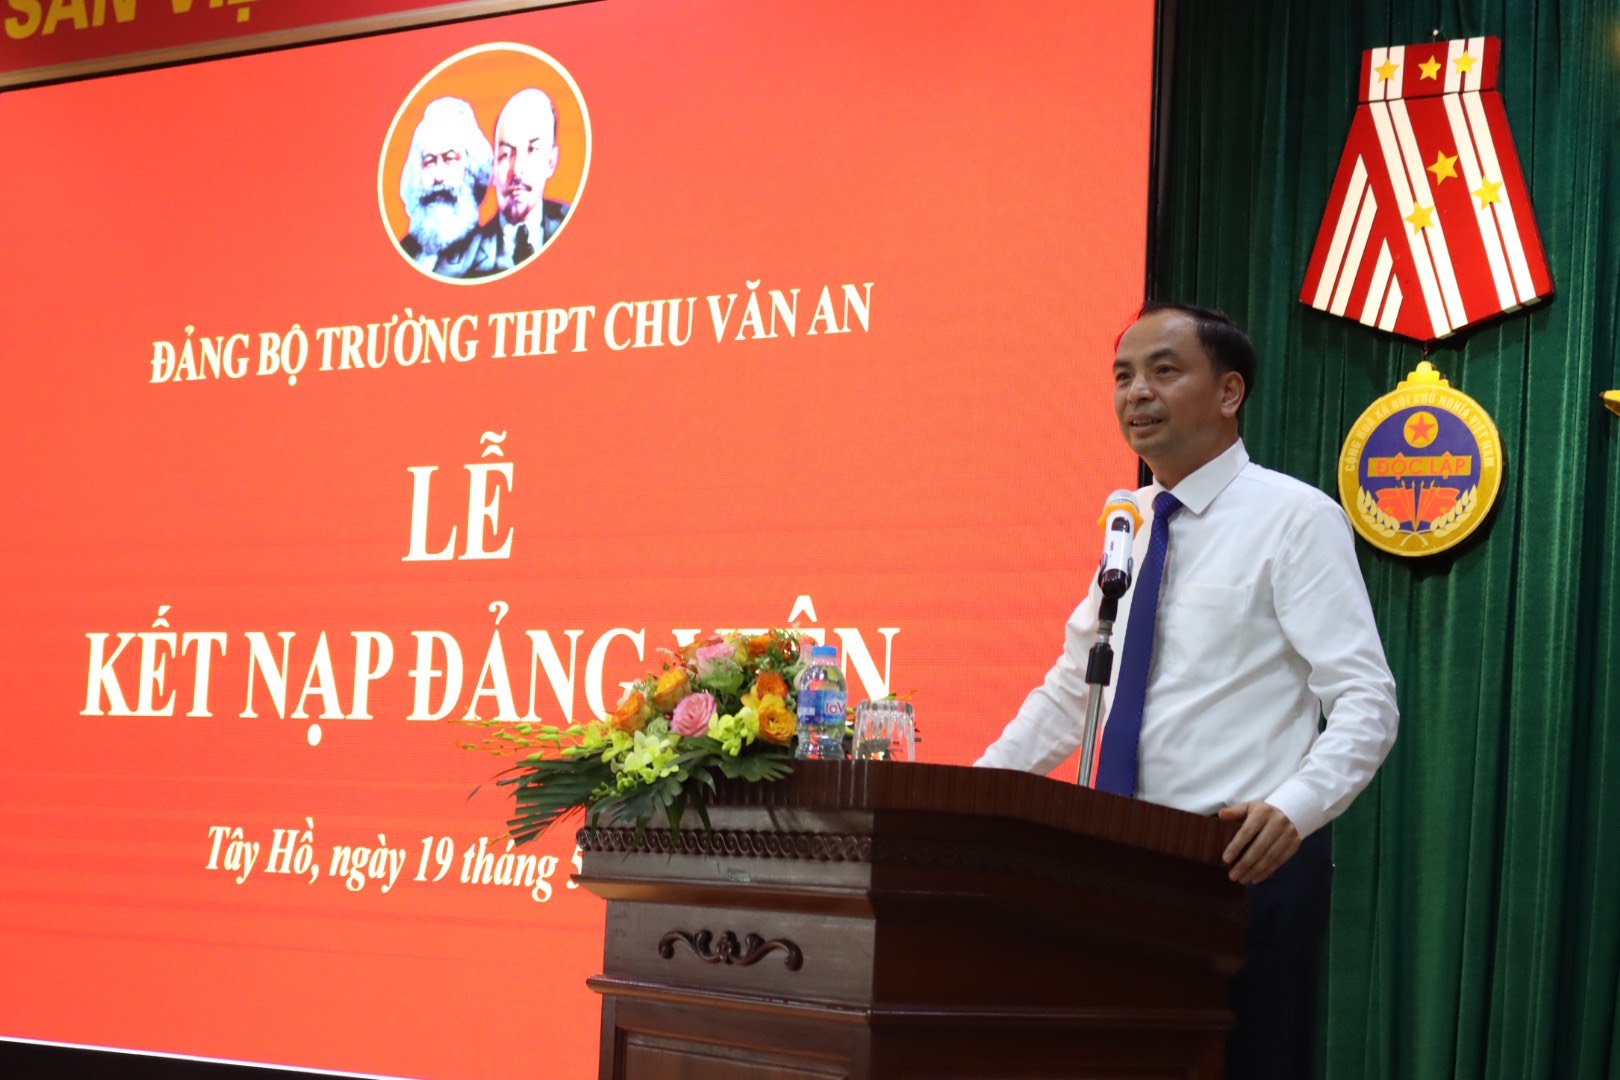 Đồng chí Nguyễn Đình Khuyến, Phó Bí thư Quận ủy, Chủ tịch UBND quận Tây Hồ phát biểu giao nhiệm vụ cho hai đảng viên trẻ.